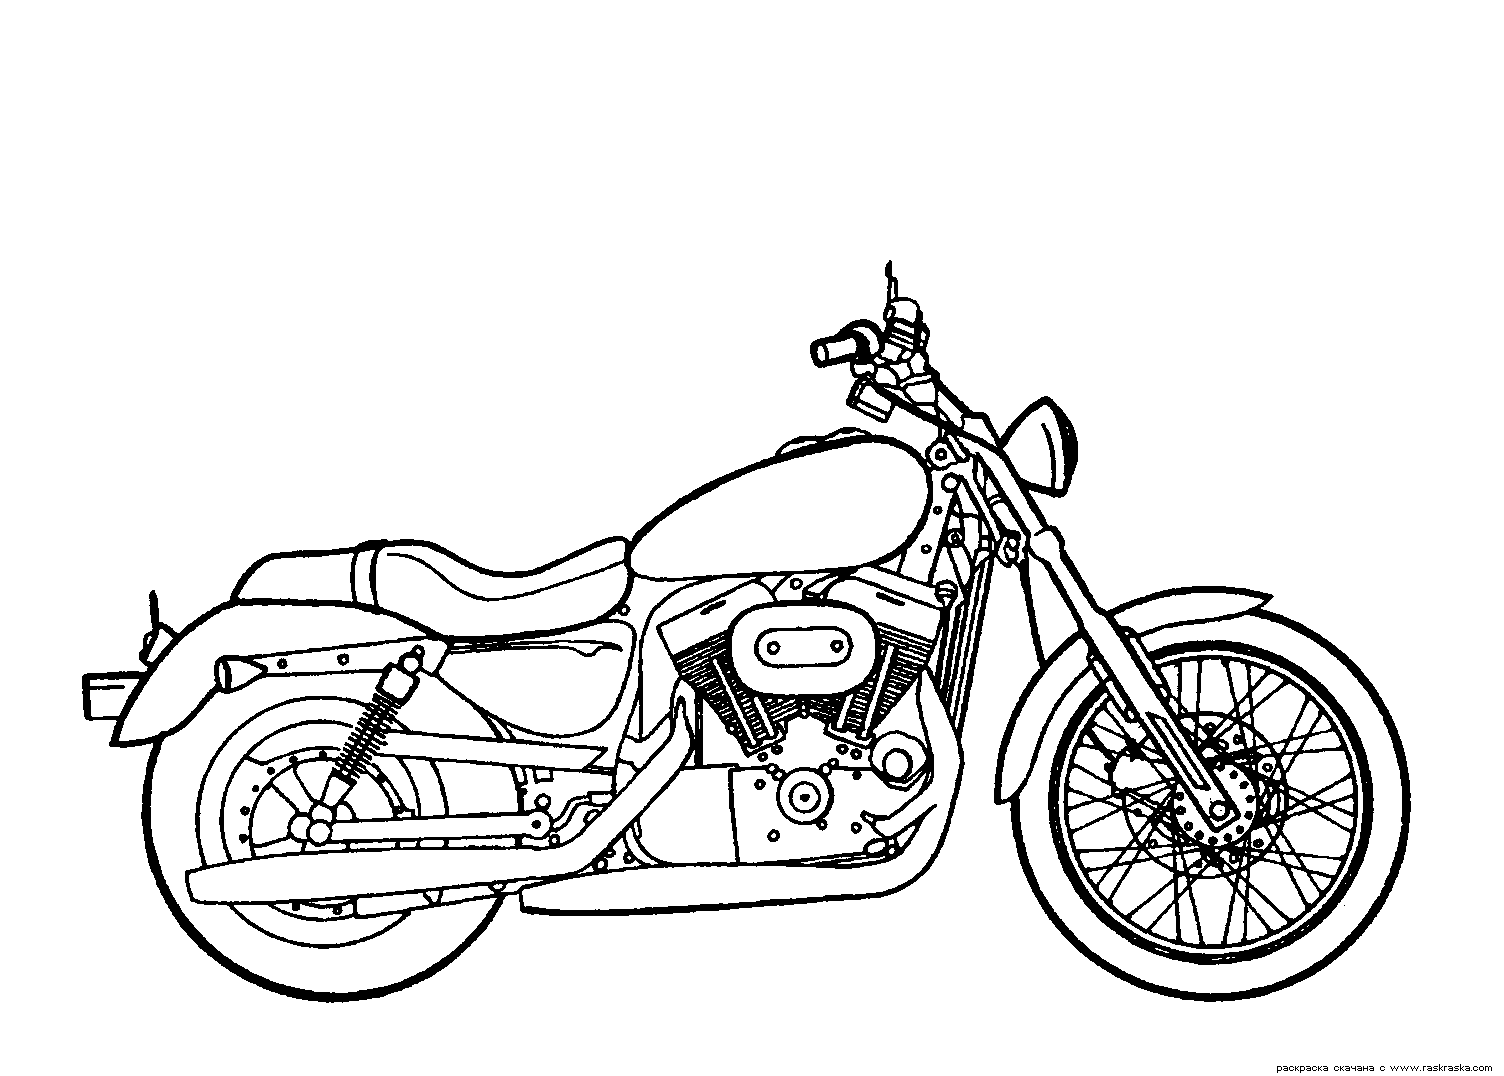 Desenhos de Moto para colorir - Tudodesenhos